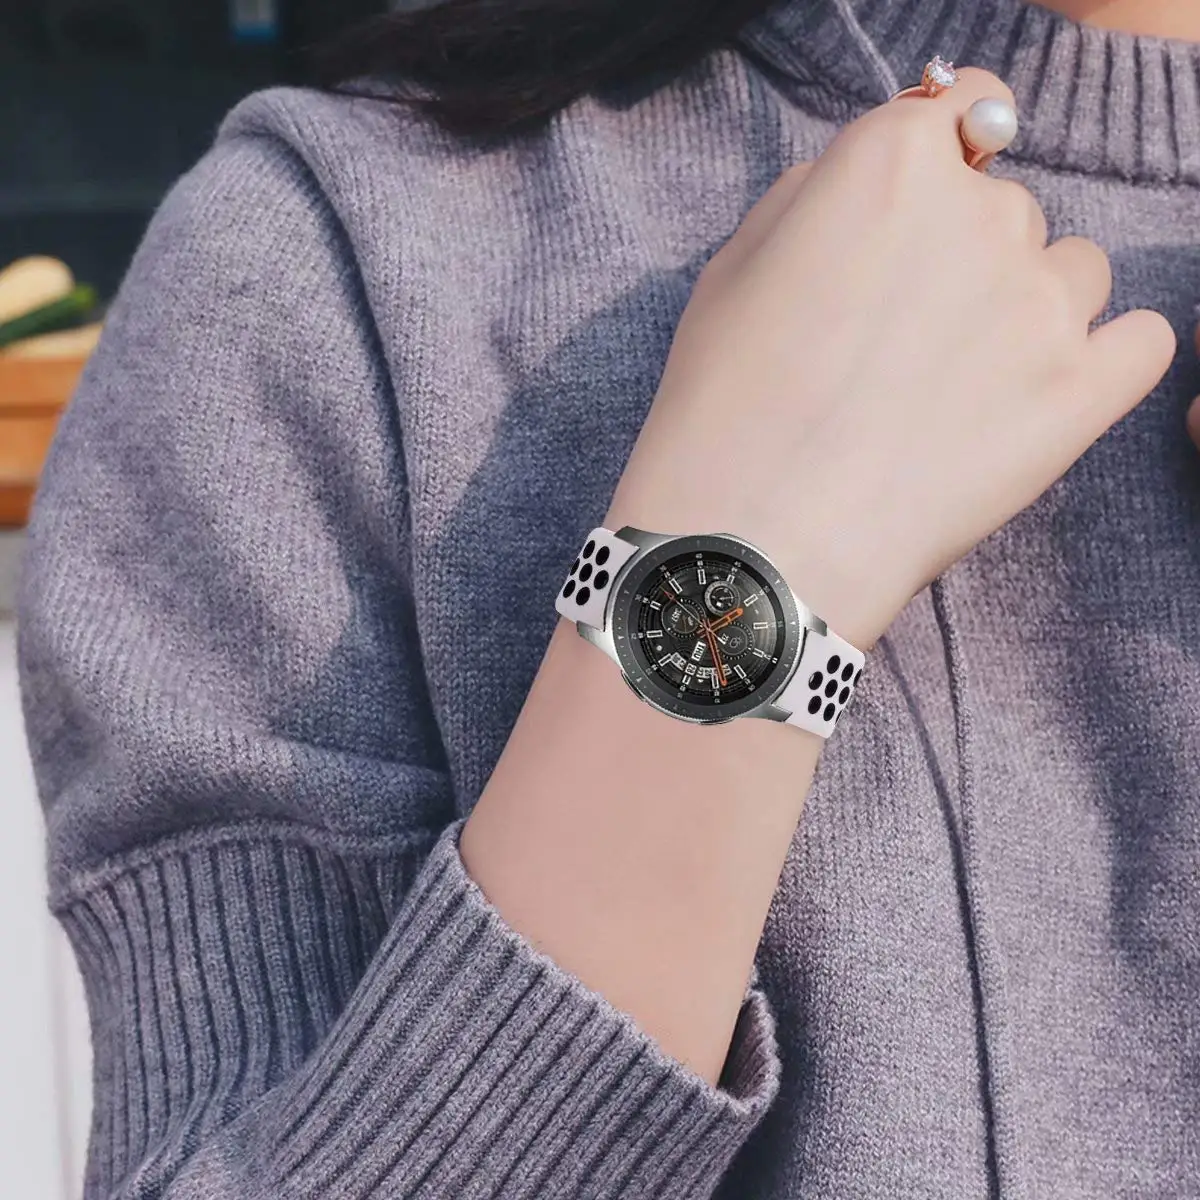 22 мм 20 мм ремешок для часов samsung galaxy watch active 46 мм ремешок gear S3 frontier 42 мм huawei watch gt ремешок силиконовый ремешок для часов